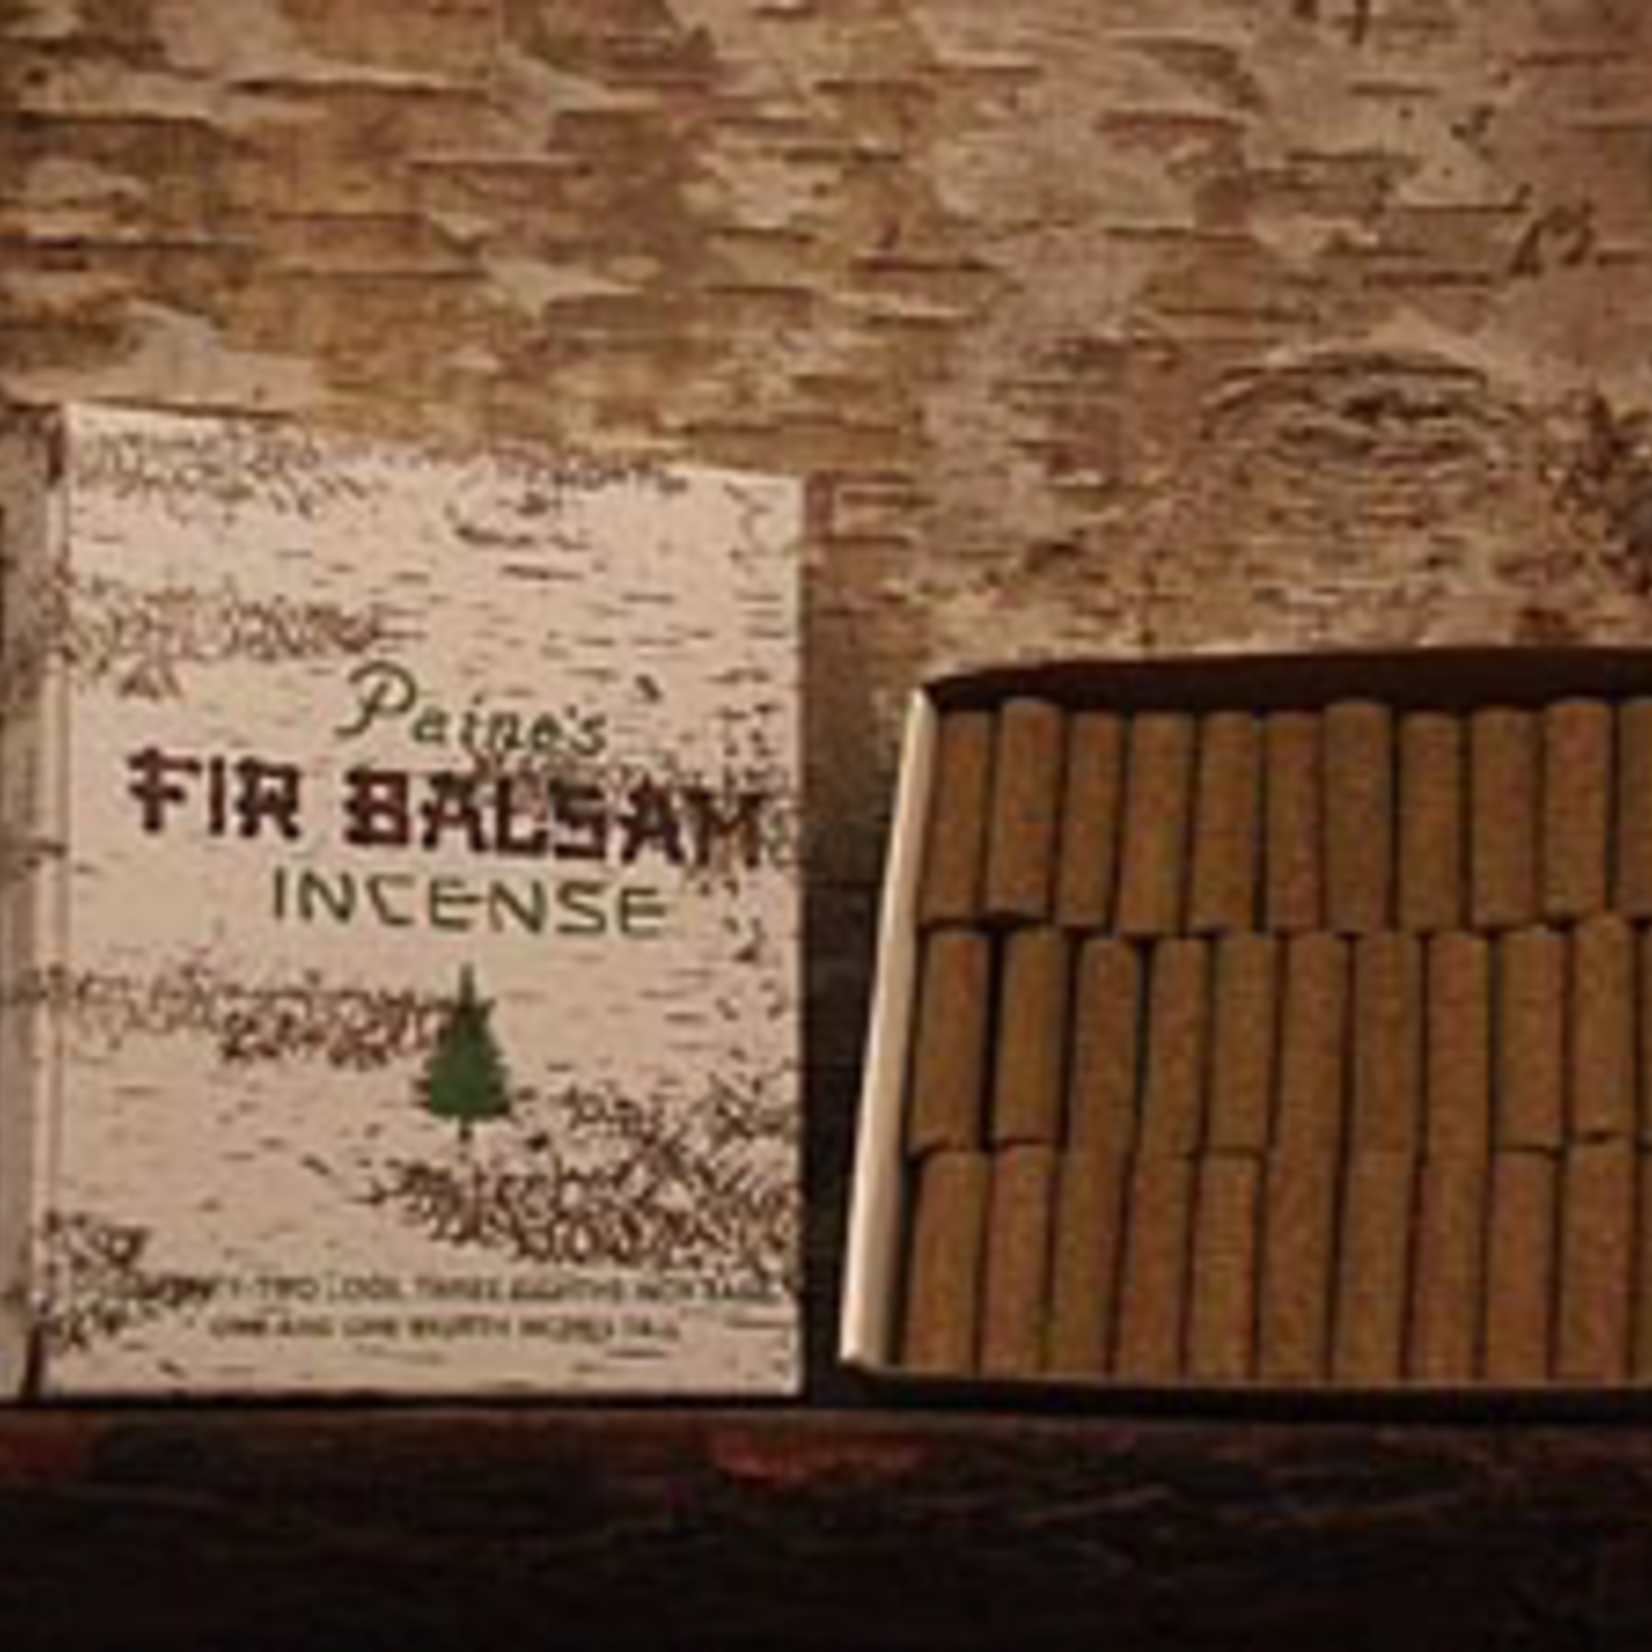 Incense Fir Balsam Insence Logs 72